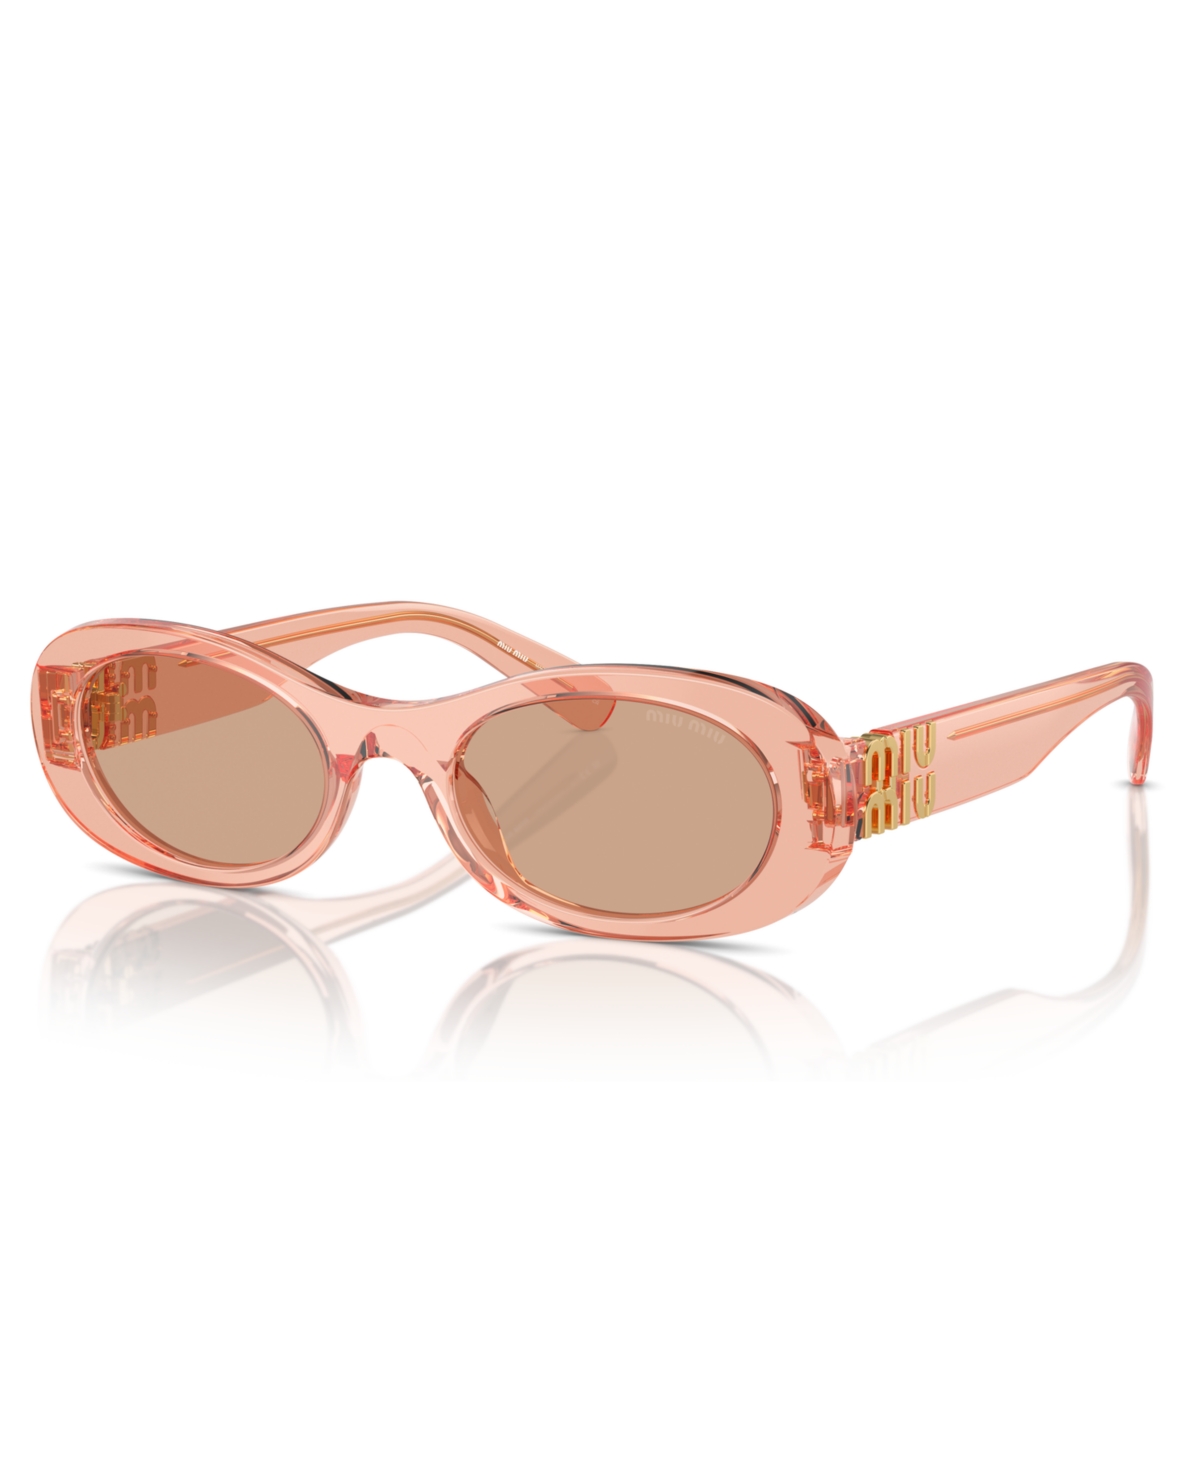 Miu Miu Women's Sunglasses, Mu 06zs In Noisette Transparent